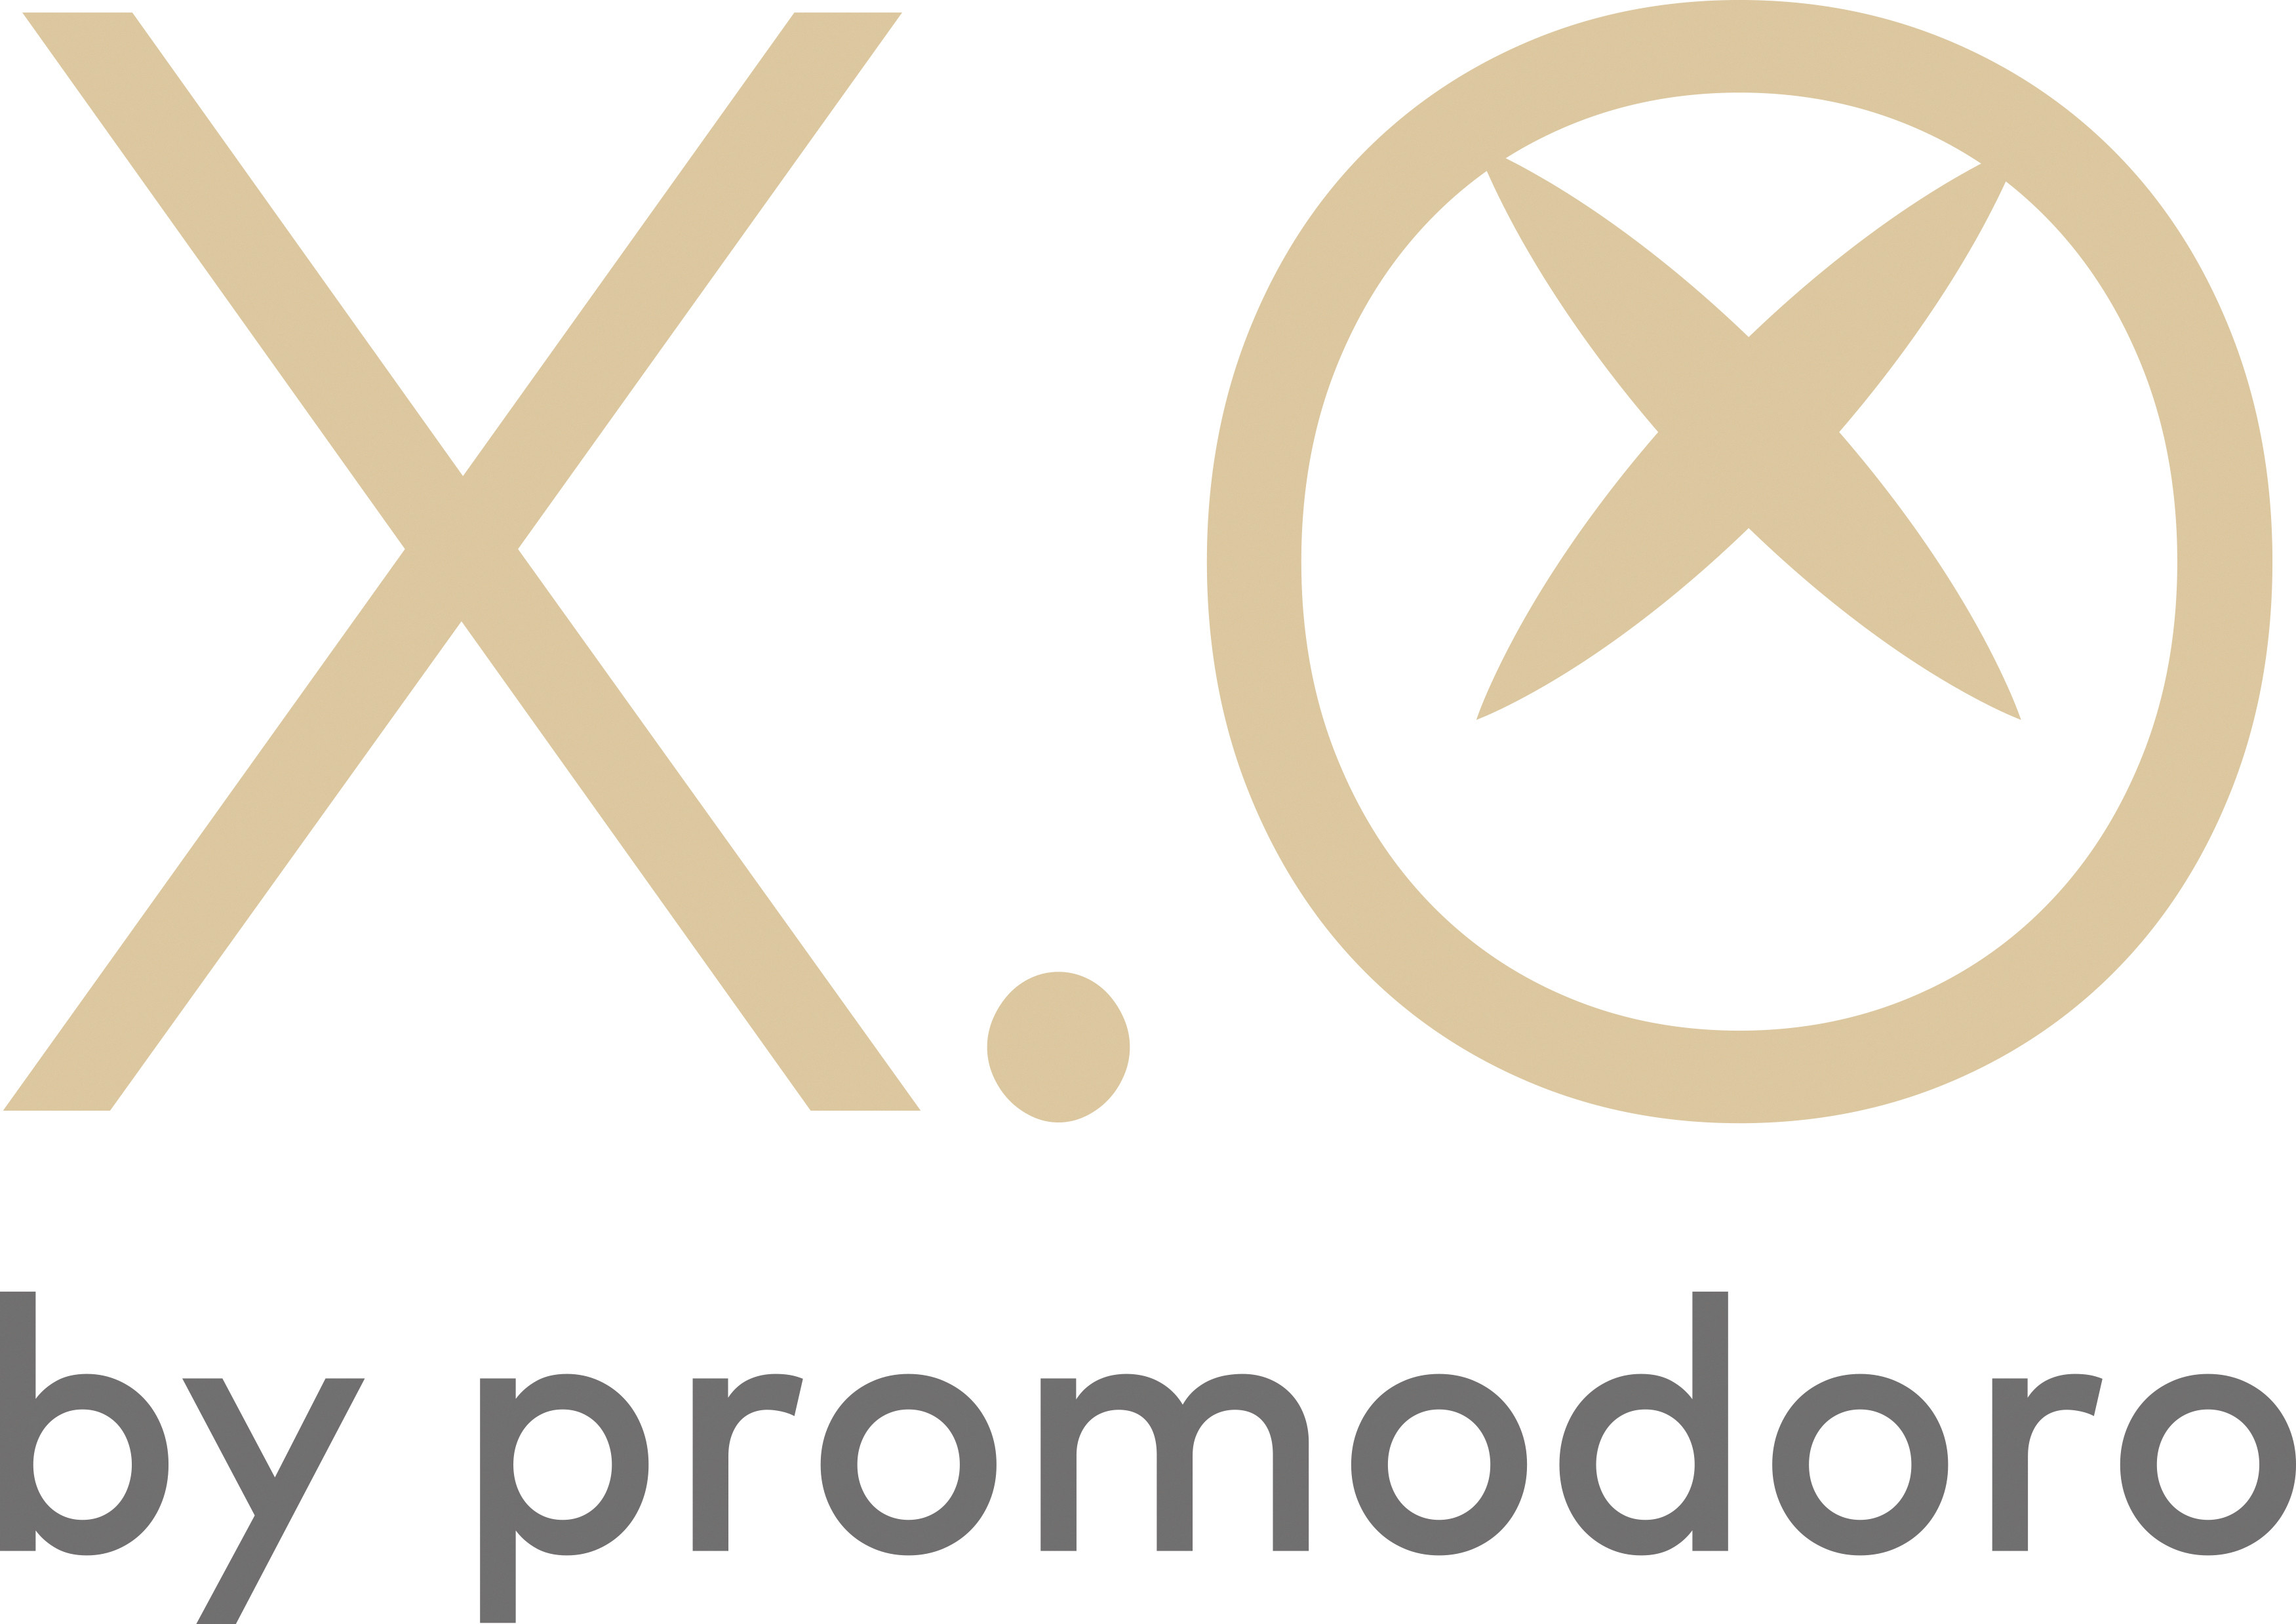 X.O by Promodoro